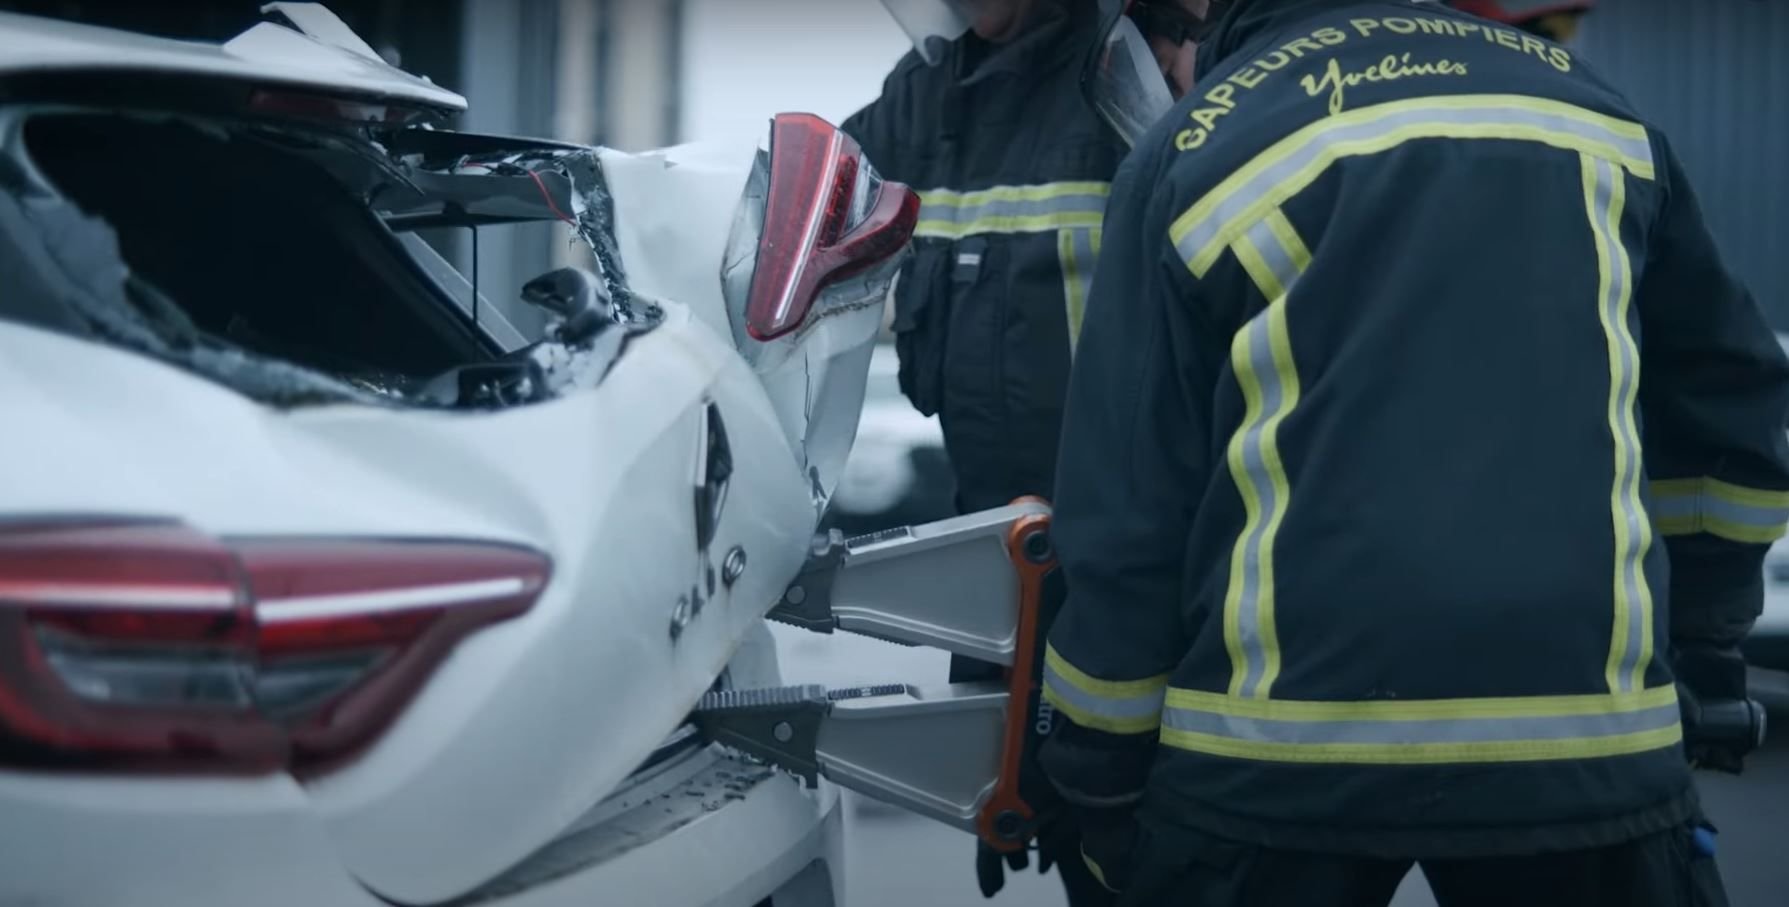 Les sapeurs-pompiers des Yvelines travaillent avec le constructeur Renault depuis dix ans. Une coopération illustrée dans le court film documentaire «Time Fighters » réalisé pour l'occasion. Renault/Jules et Gédéon Naudet